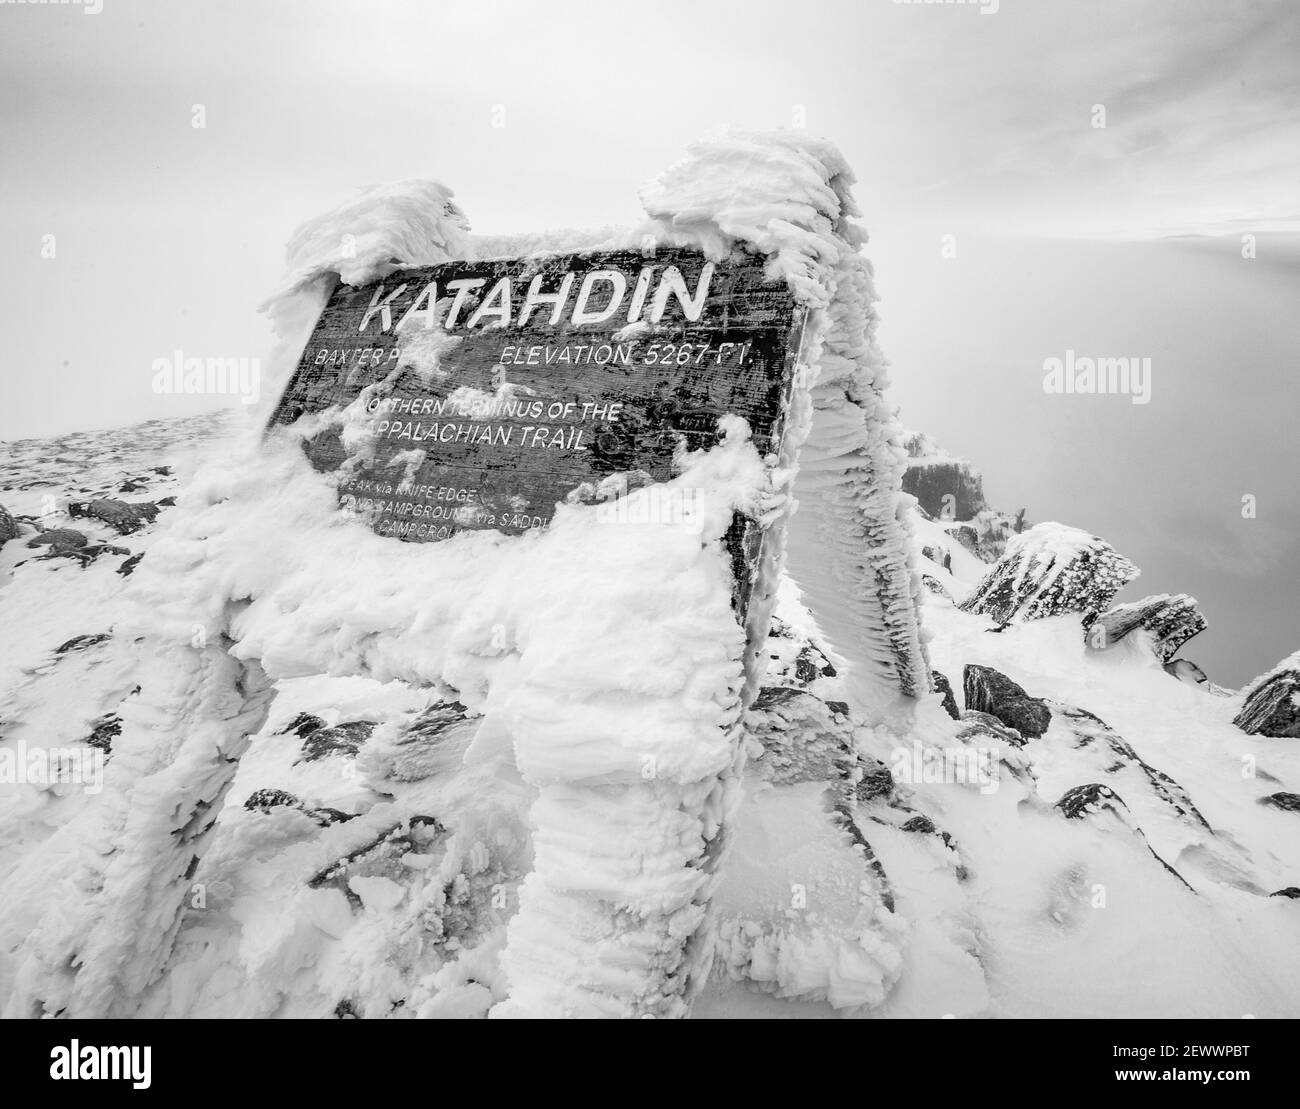 katahdin Gipfelschild im Winter mit Schnee bedeckt, Appalachian Trail. Stockfoto